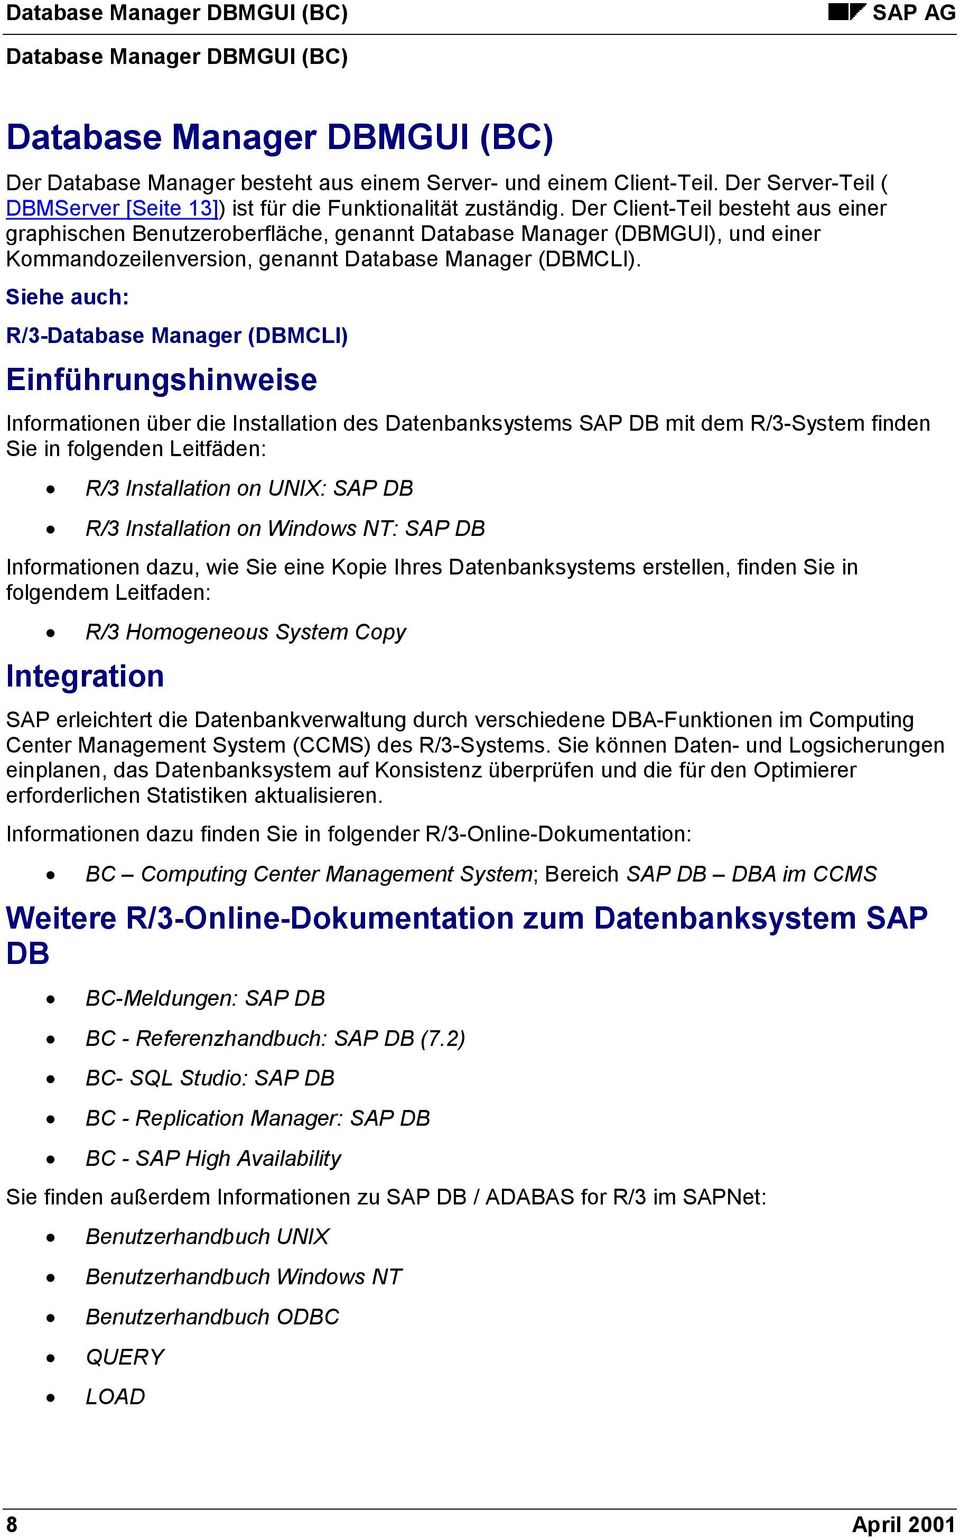 Siehe auch: R/3-Database Manager (DBMCLI) Einführungshinweise Informationen über die Installation des Datenbanksystems SAP DB mit dem R/3-System finden Sie in folgenden Leitfäden: R/3 Installation on